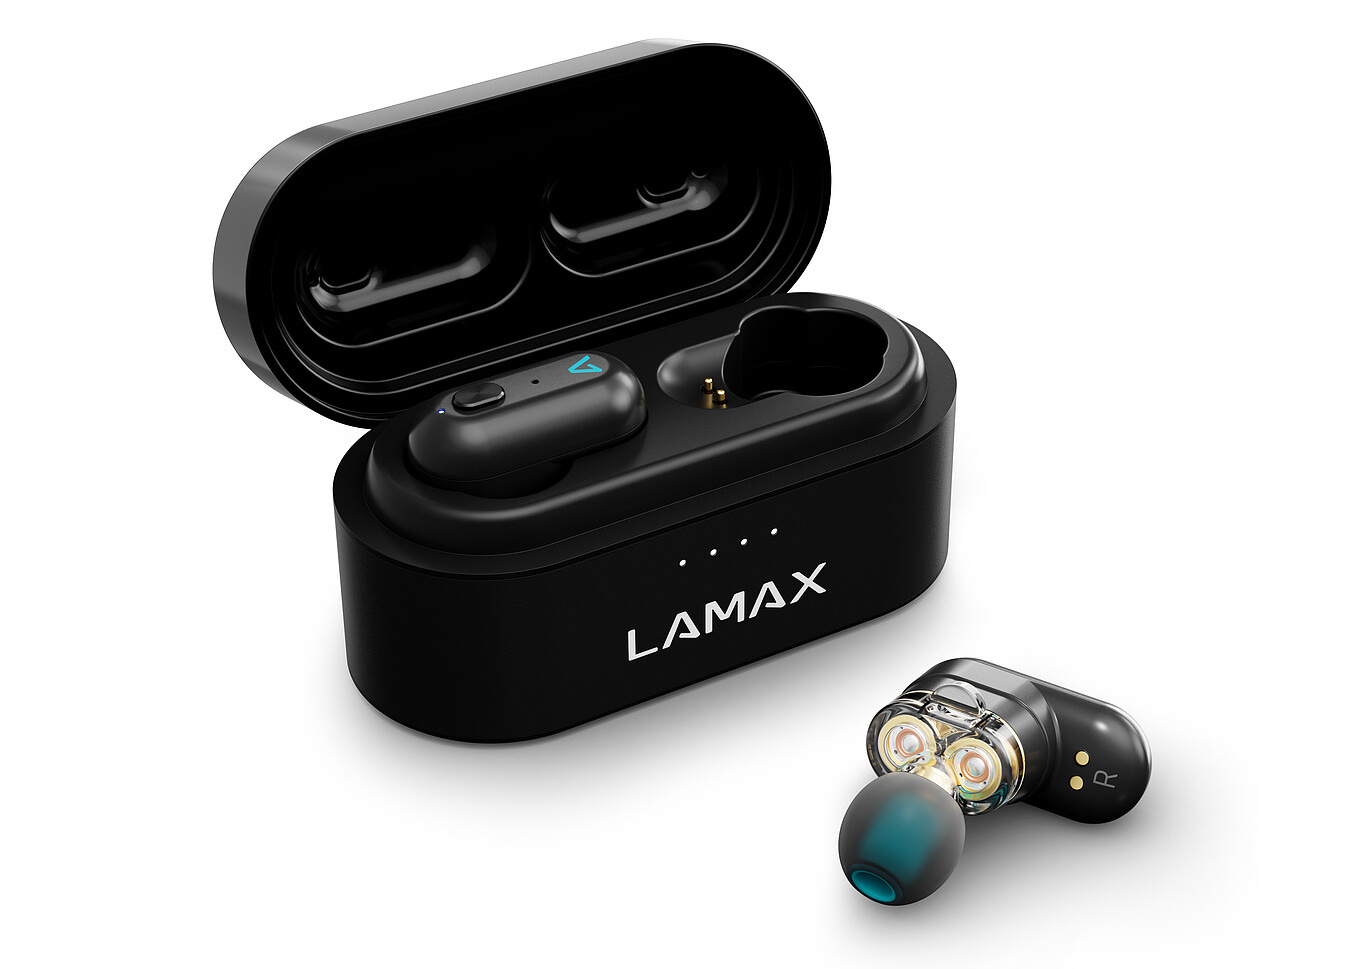 LAMAX Duals1 - Zdvojnásobí tvůj hudební zážitek